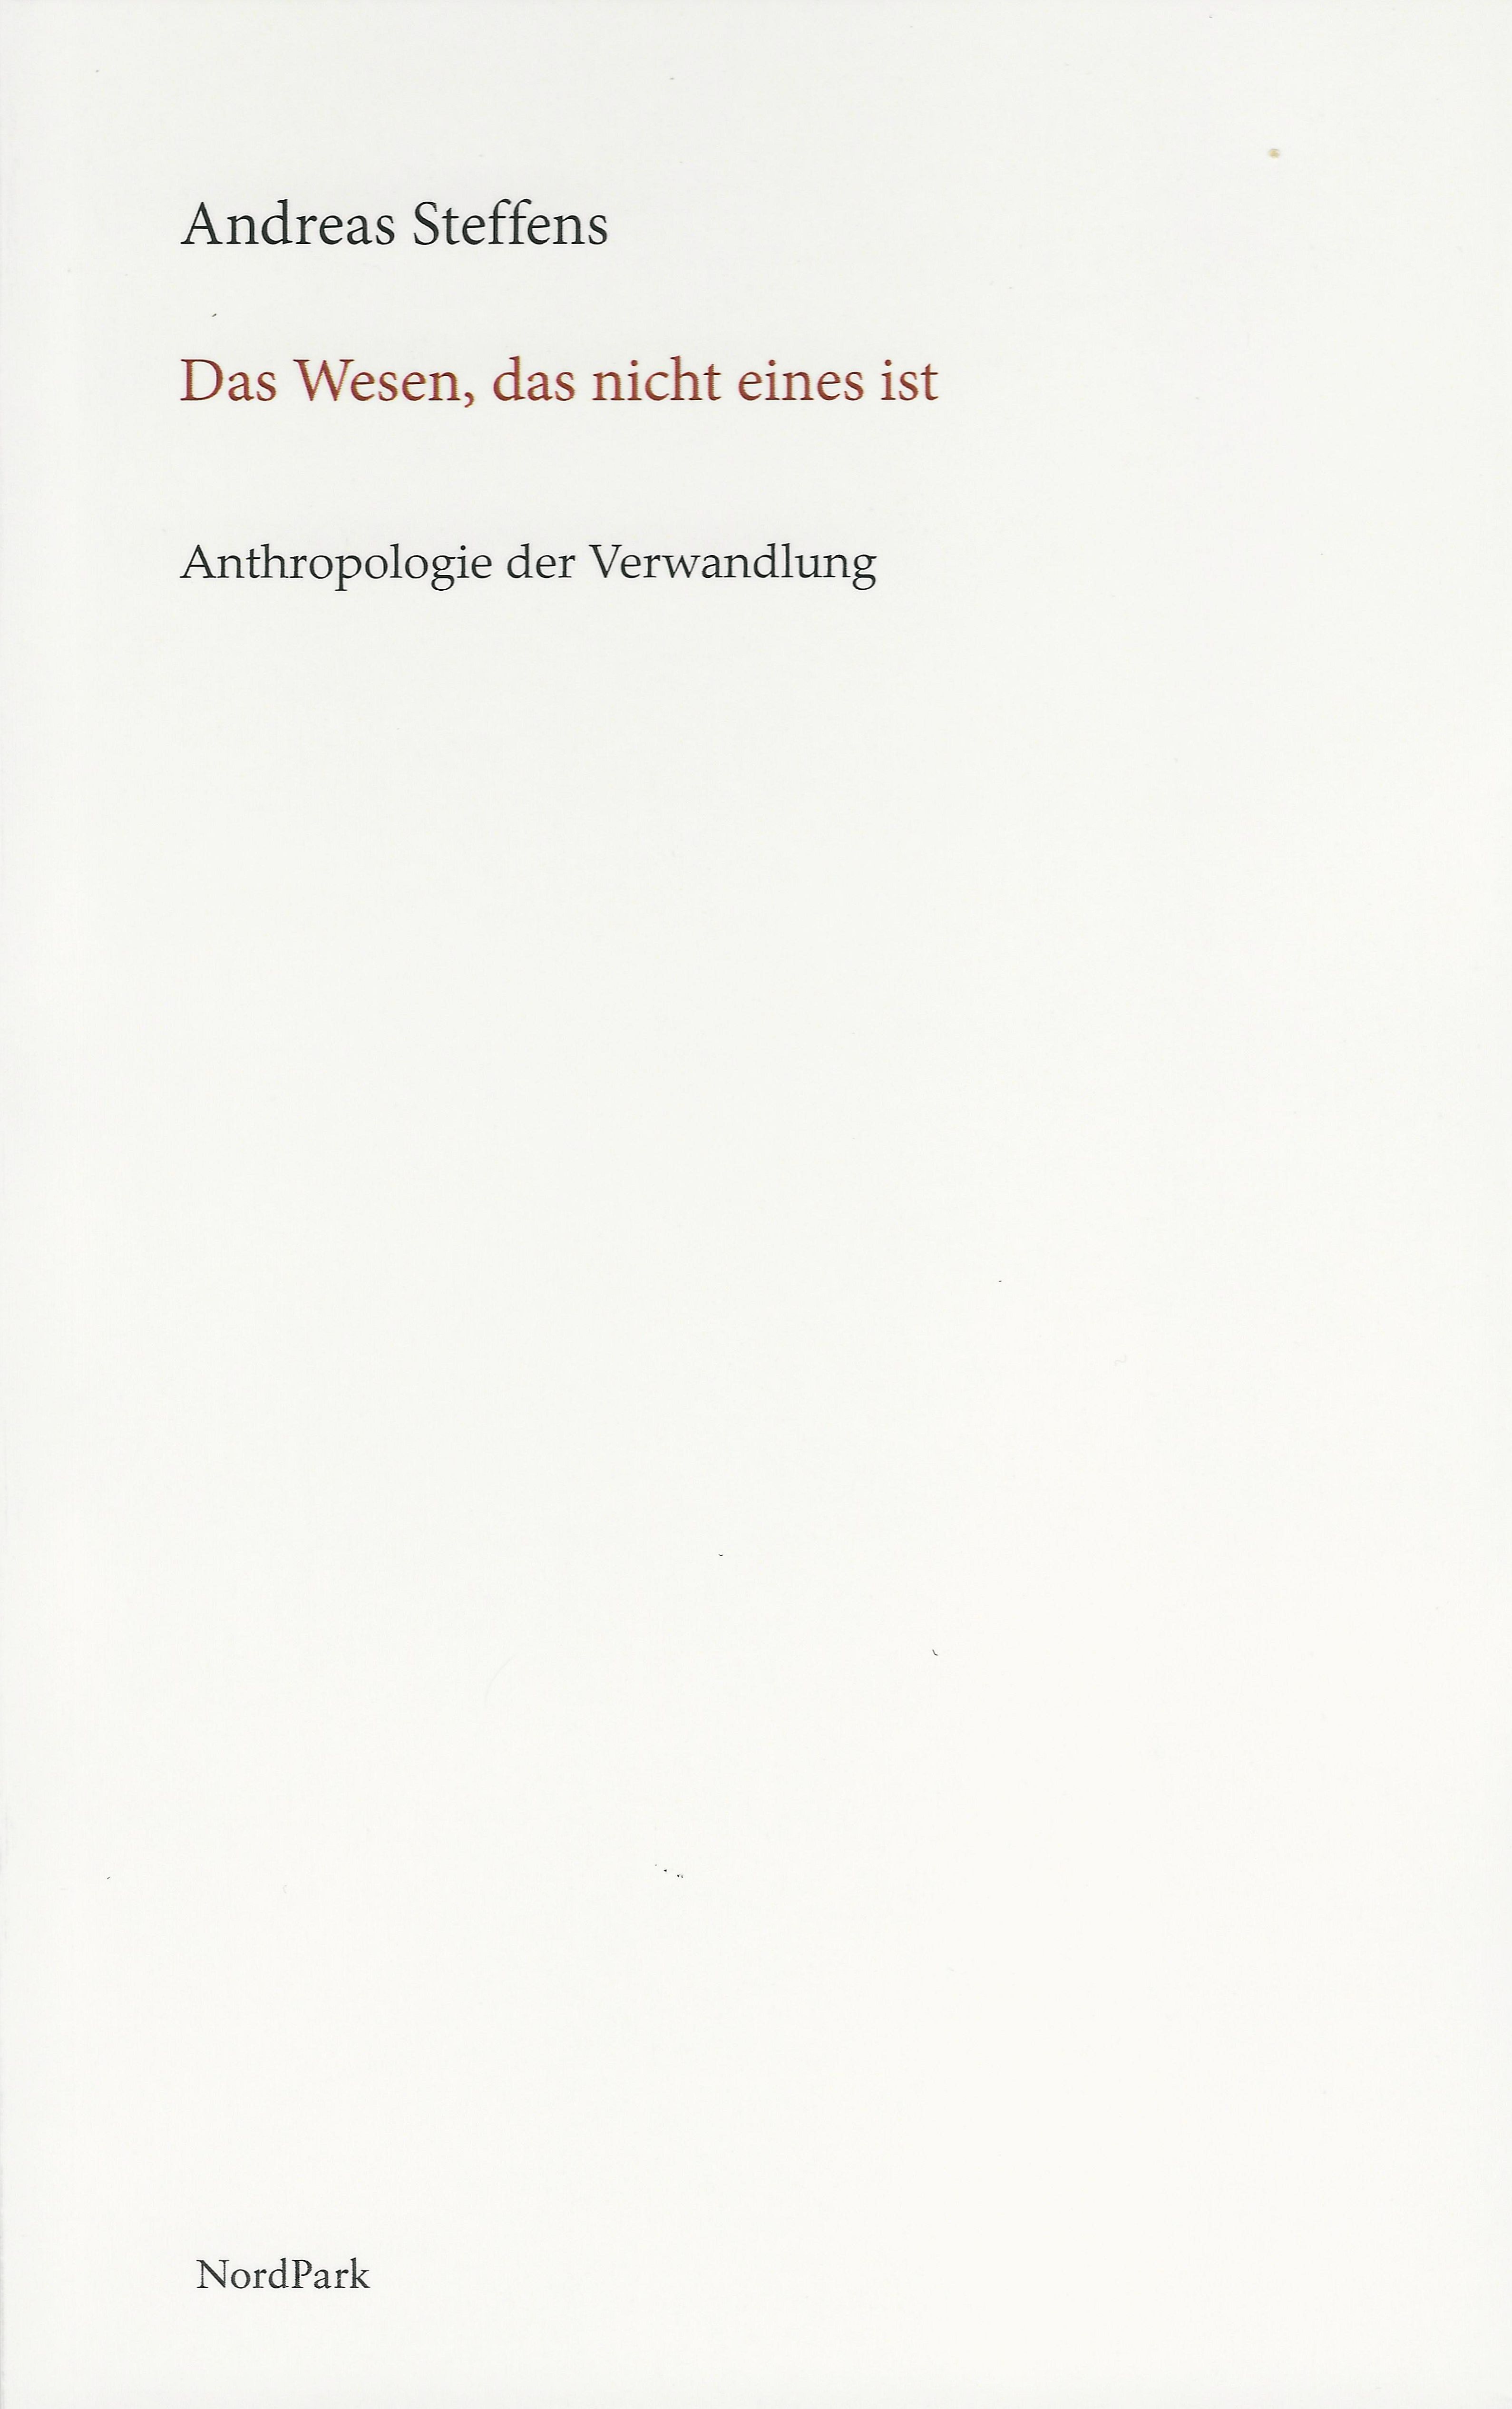 Cover-Steffens-Das-Wesen-neu.jpg